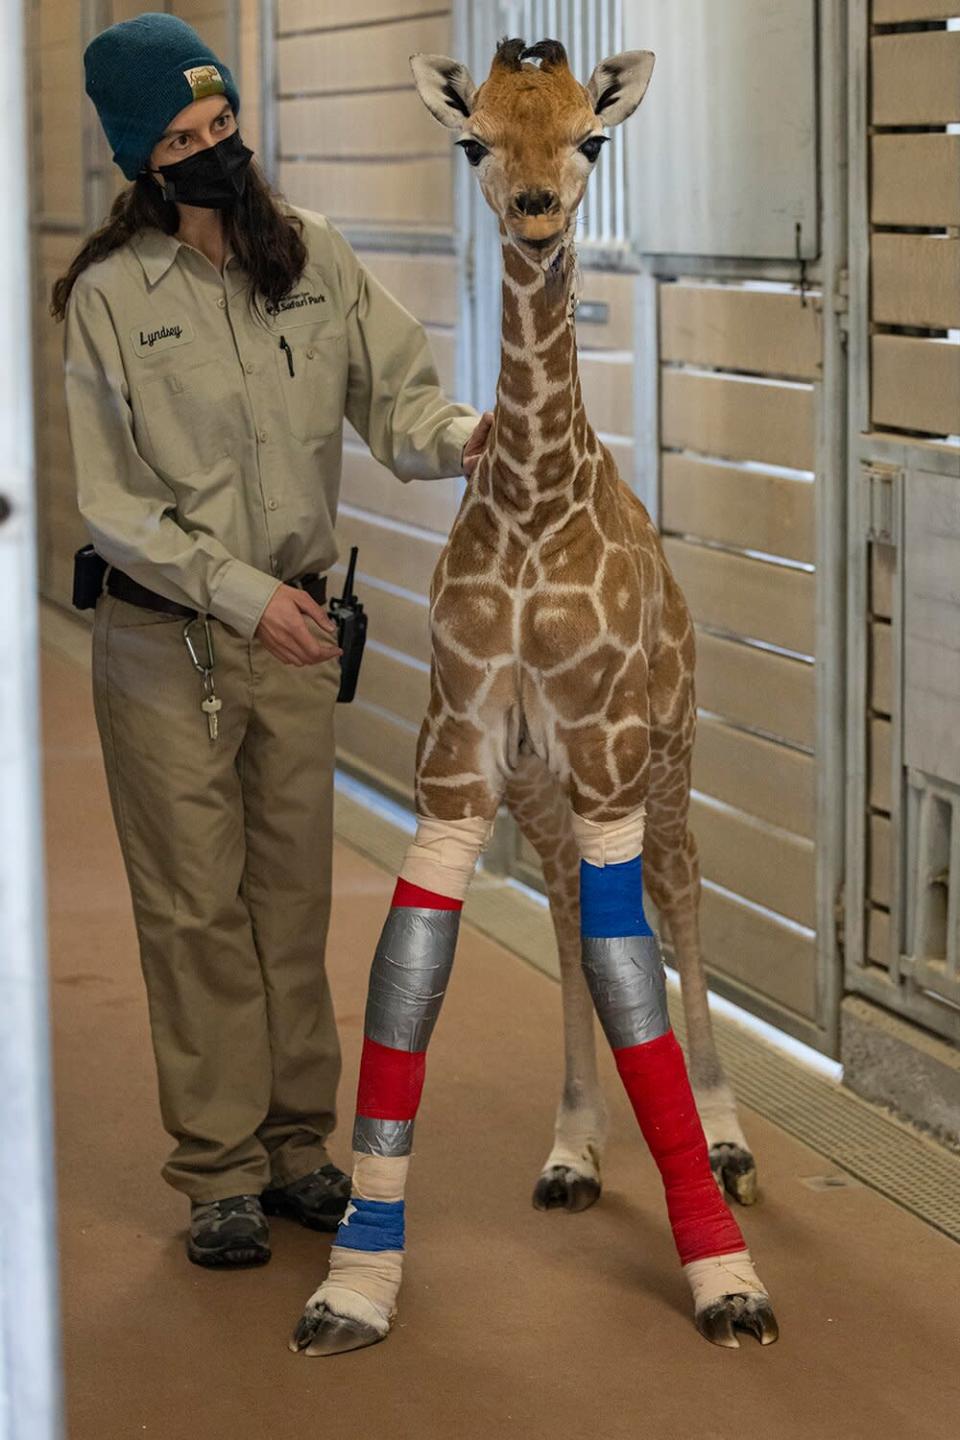 Giraffe leg braces